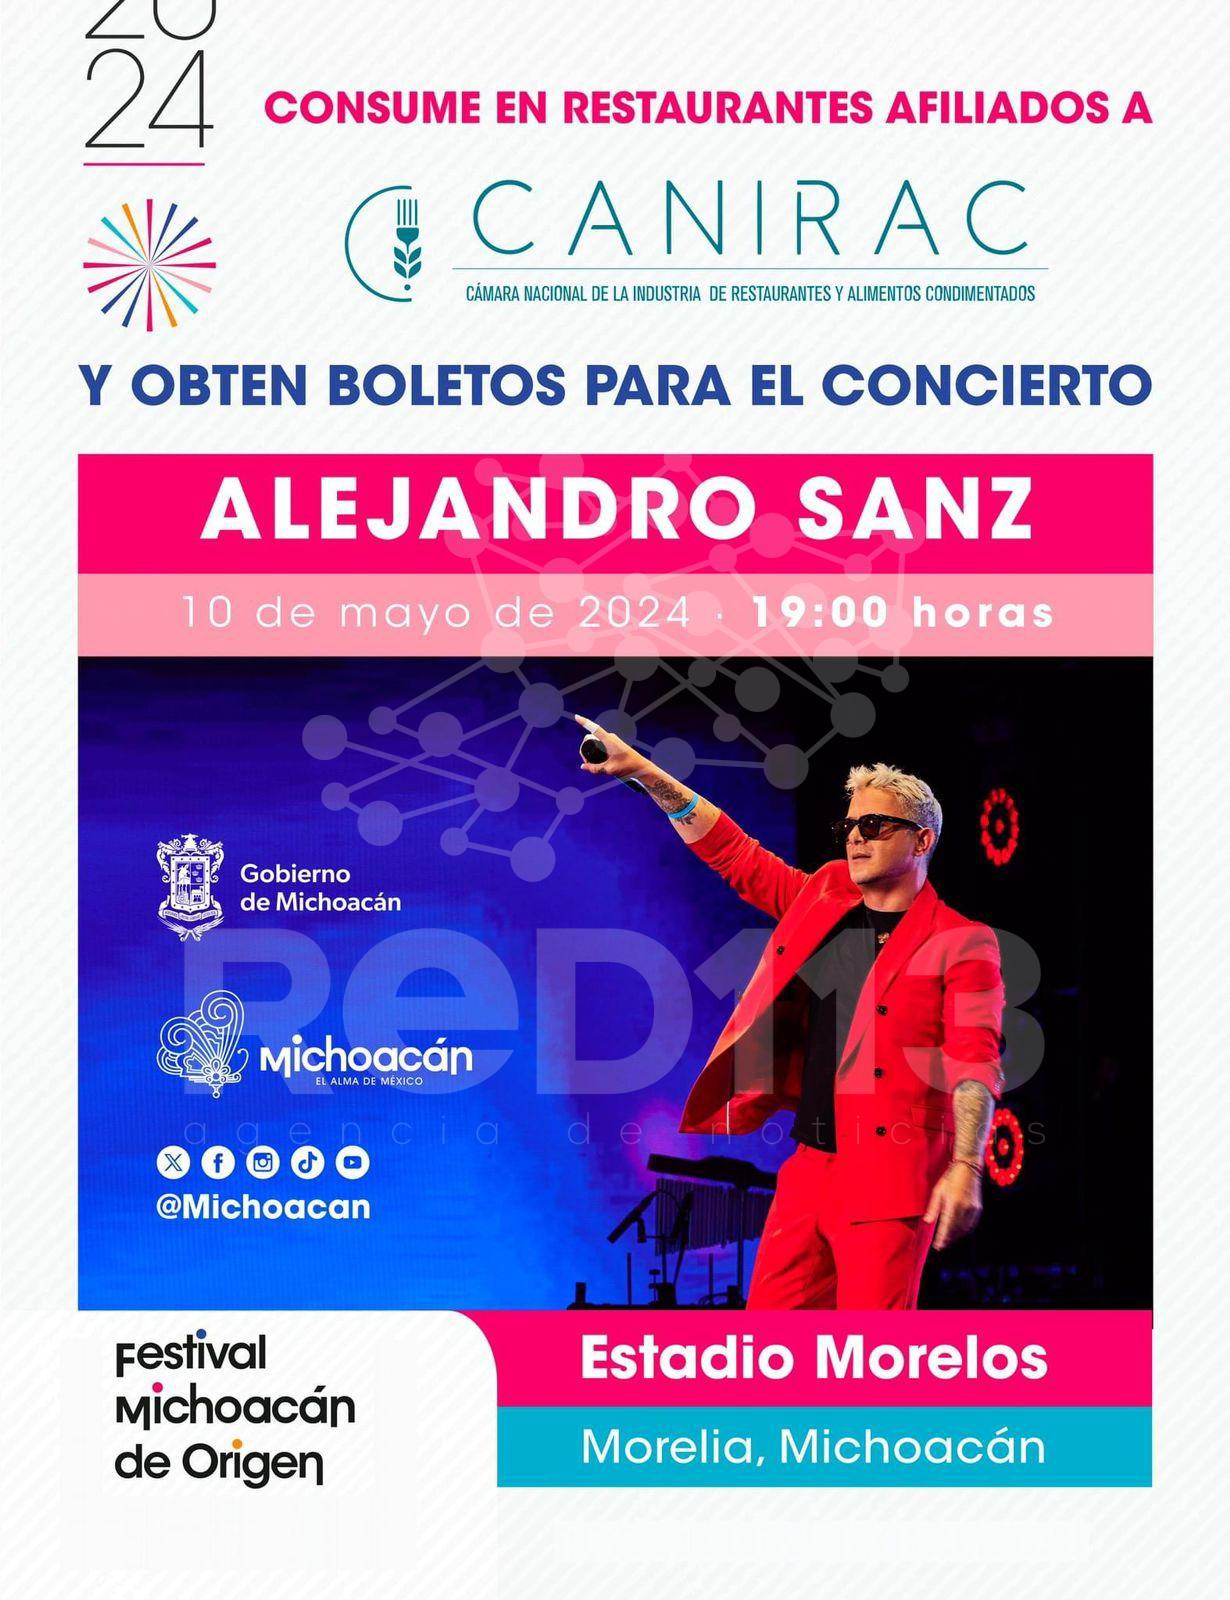 Conoce los restaurantes que te llevan al concierto de Alejandro Sanz en el Festival de Origen